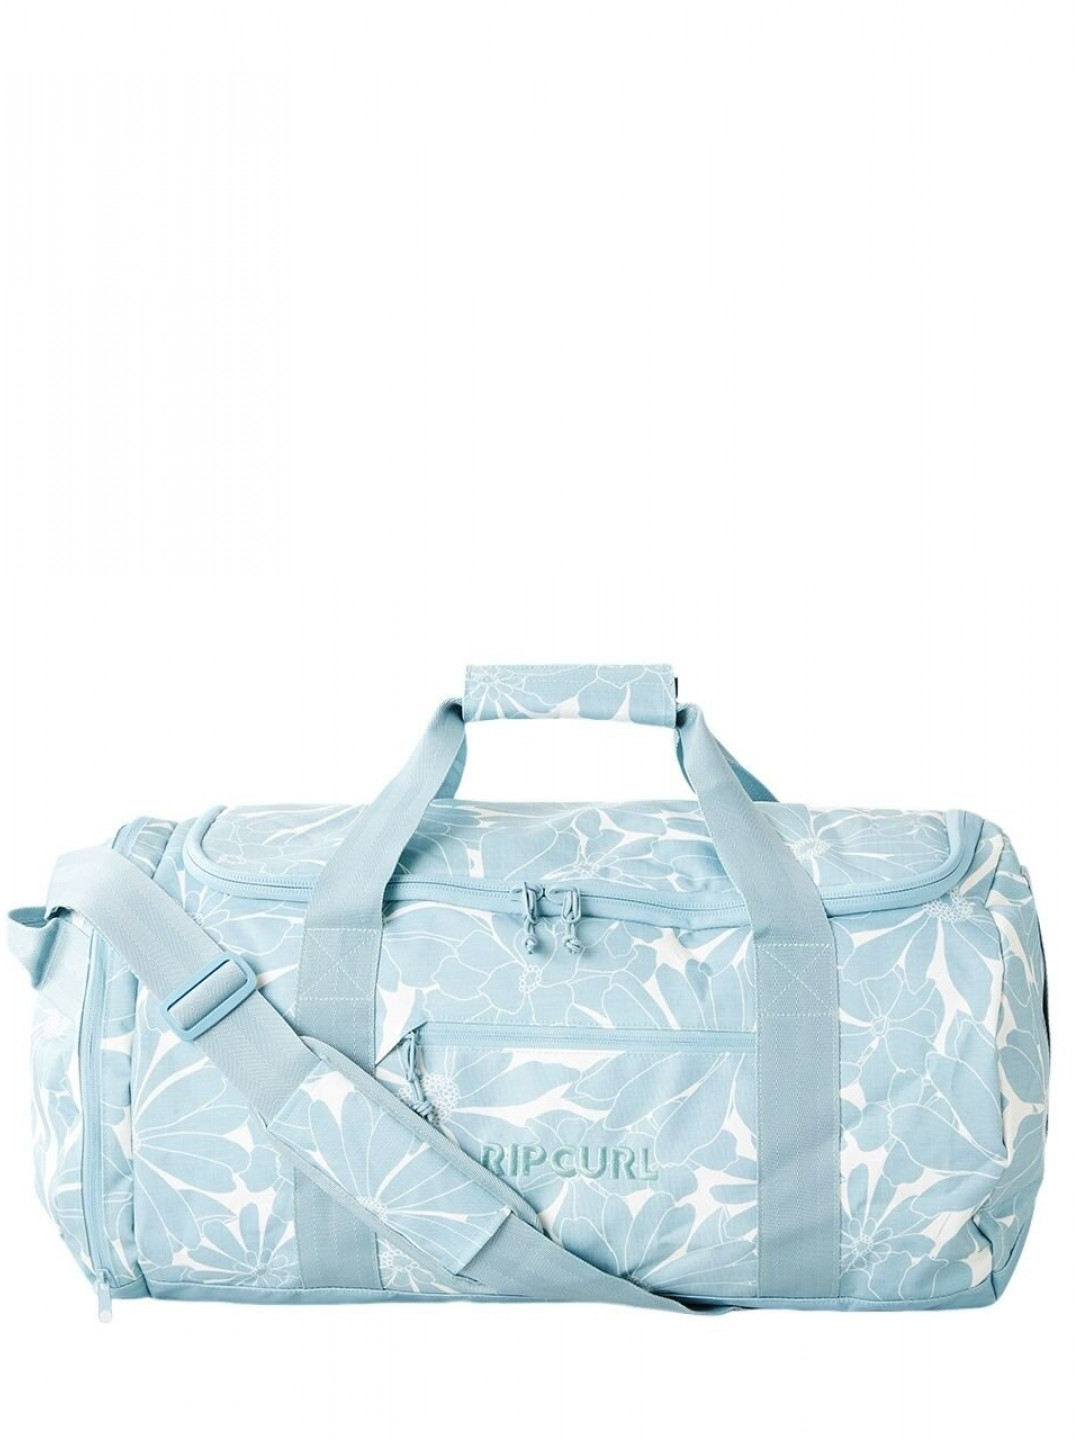 Rip curl taška Large Packable Duffle 50 L Dusty Blue Modrá Objem 50 L